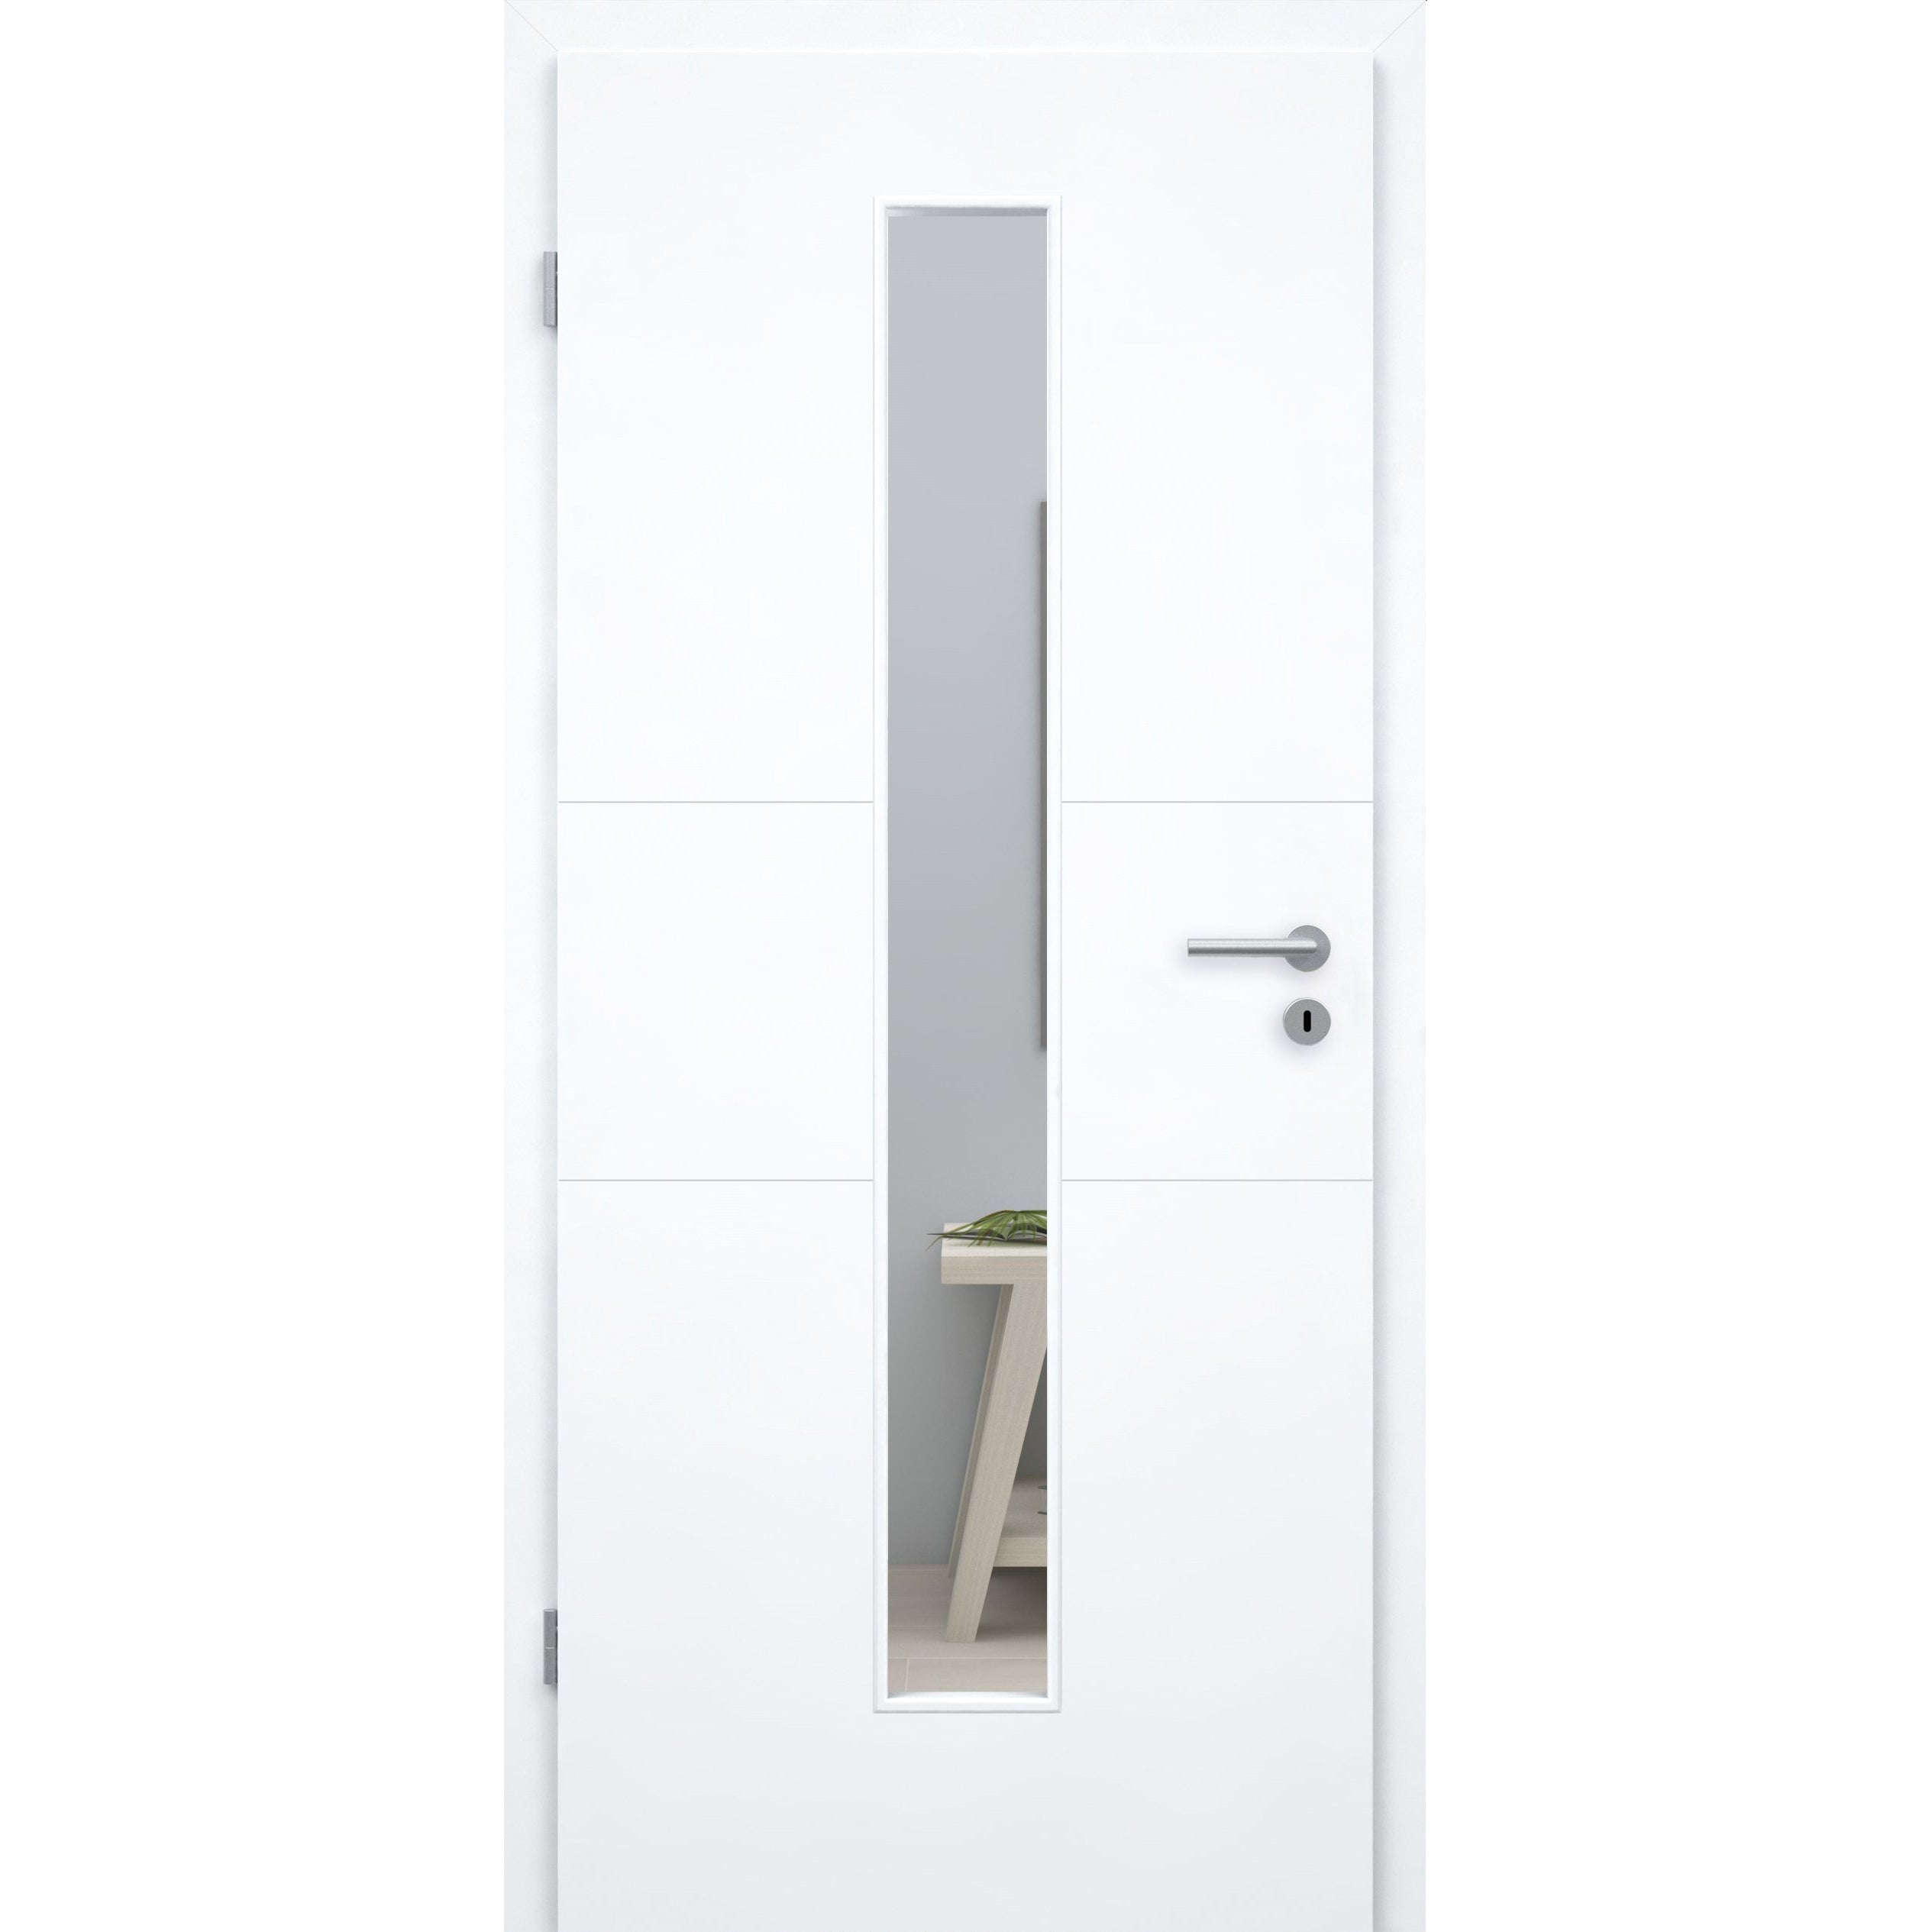 Zimmertür mit Zarge und Lichtausschnitt brillant-weiß 2 Rillen quer Designkante - Modell Designtür Q23LAM